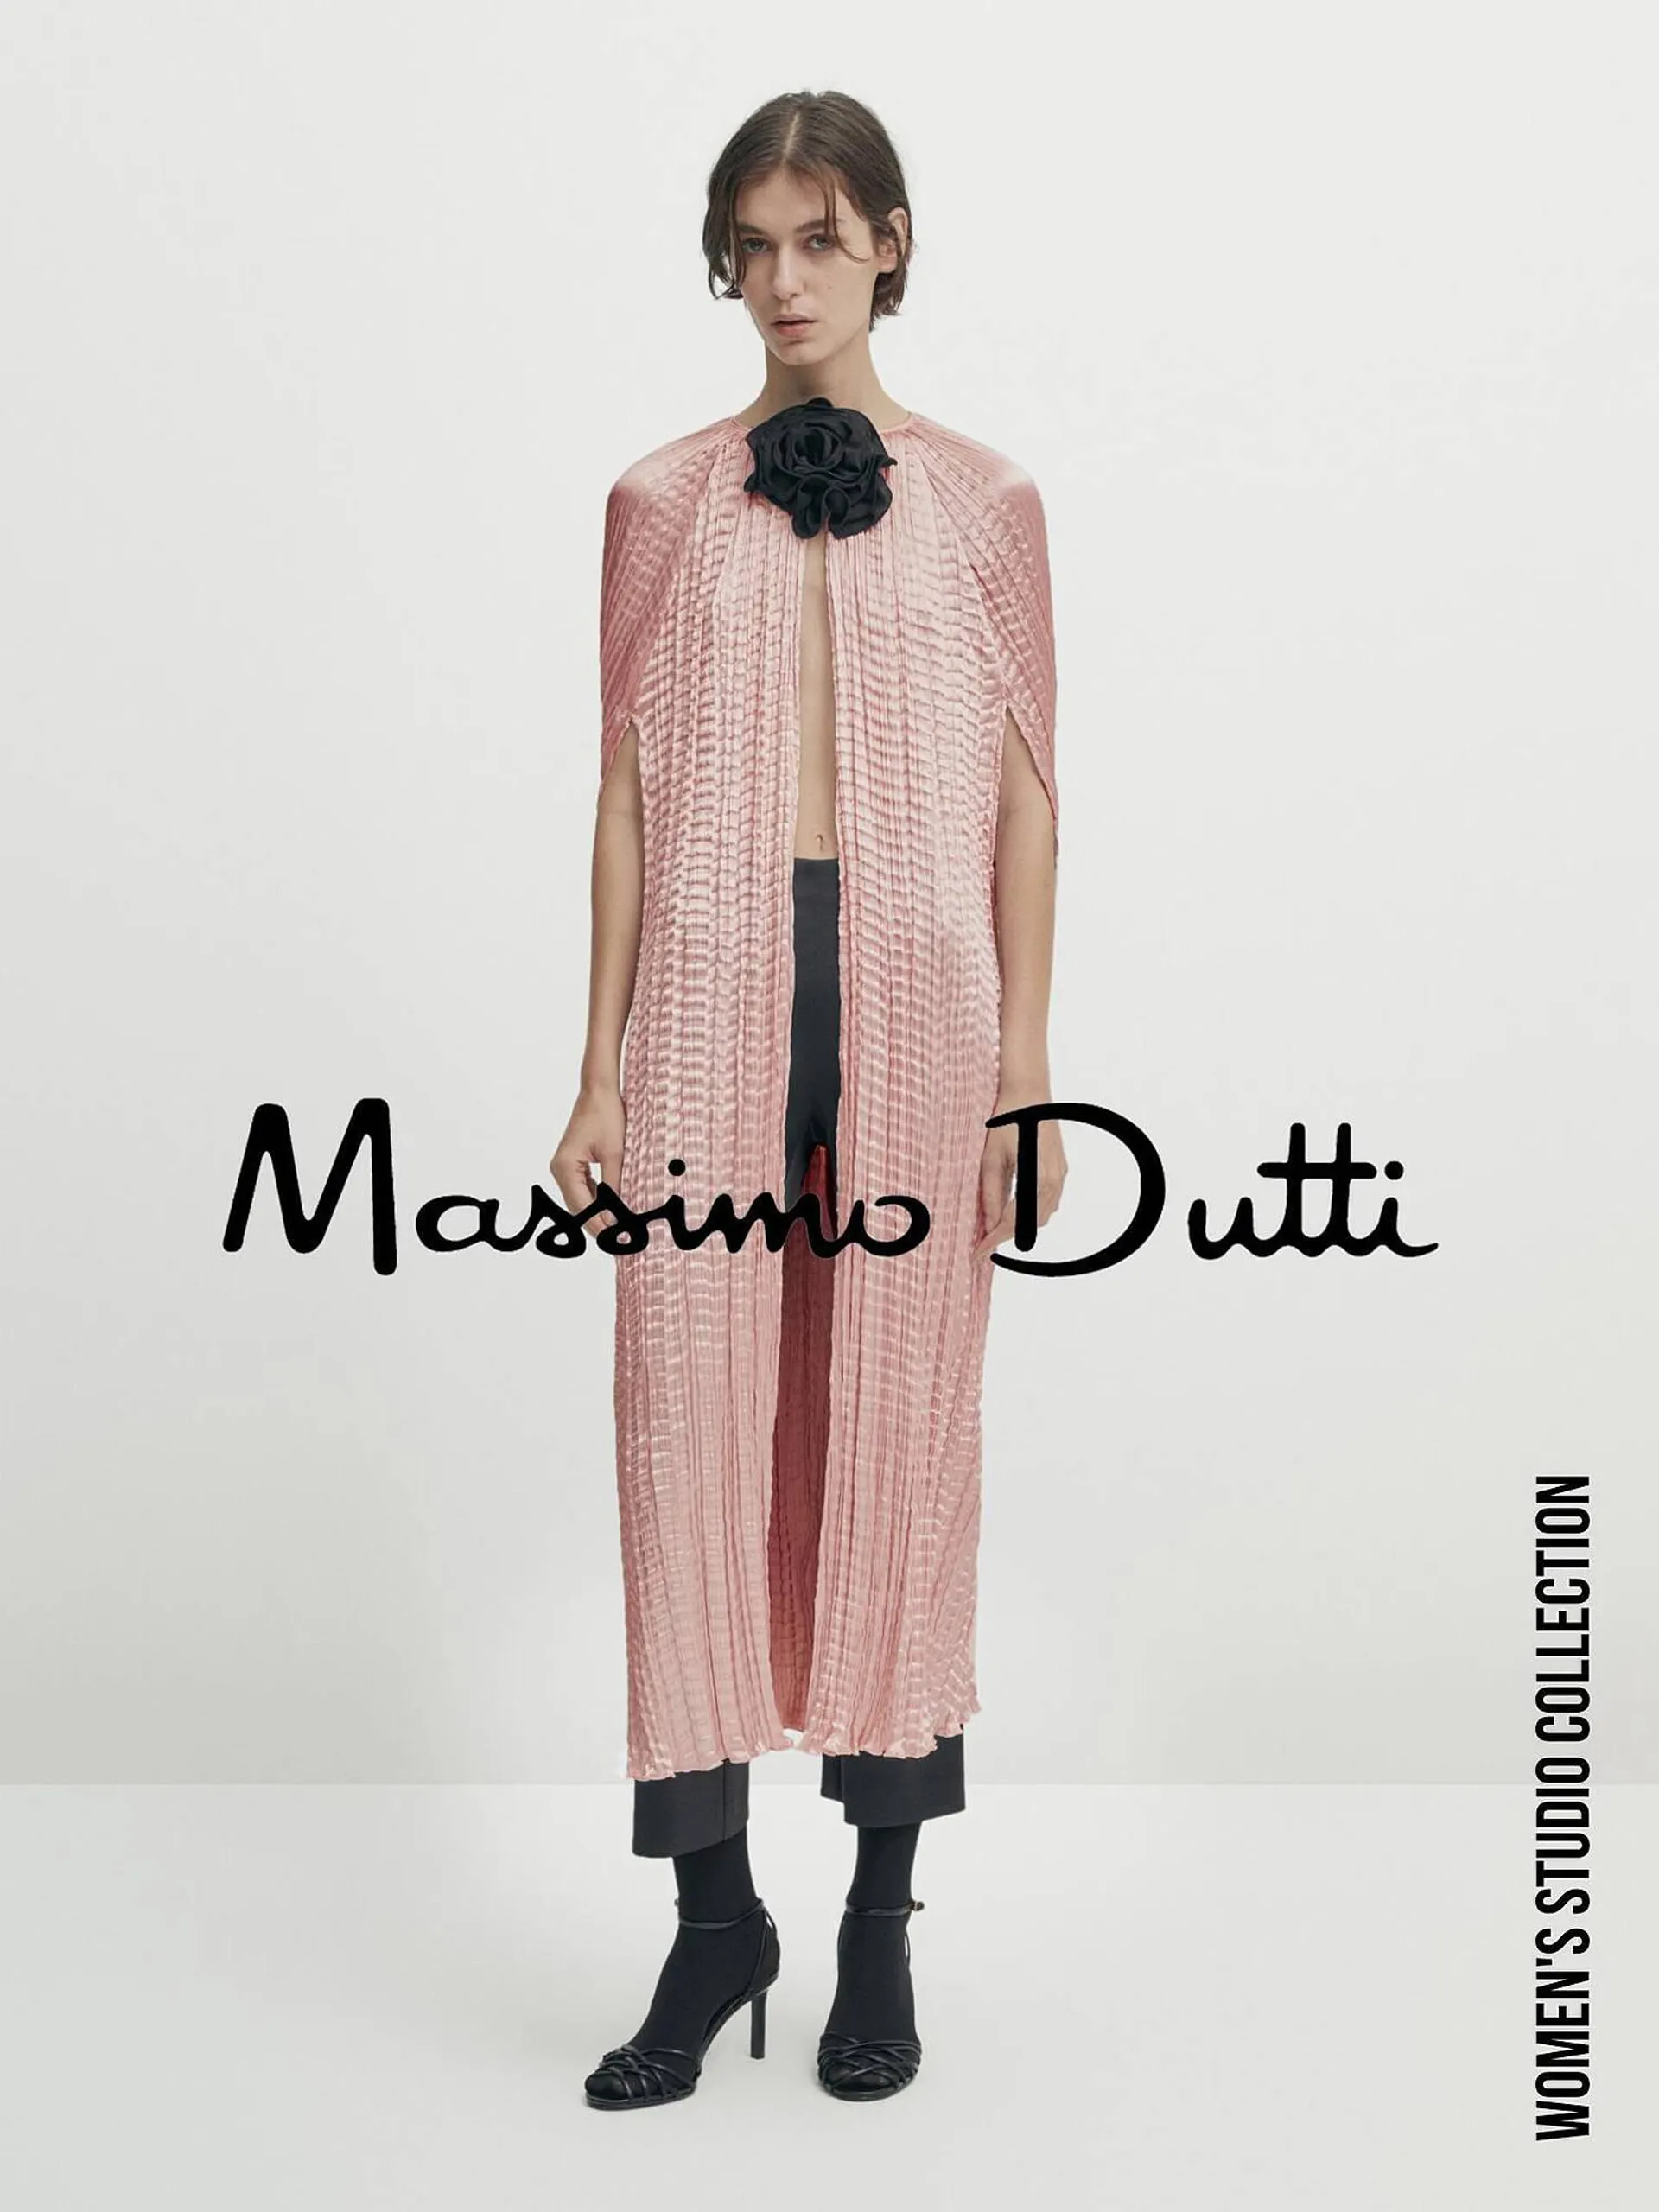 Massimo Dutti catalogue - 1